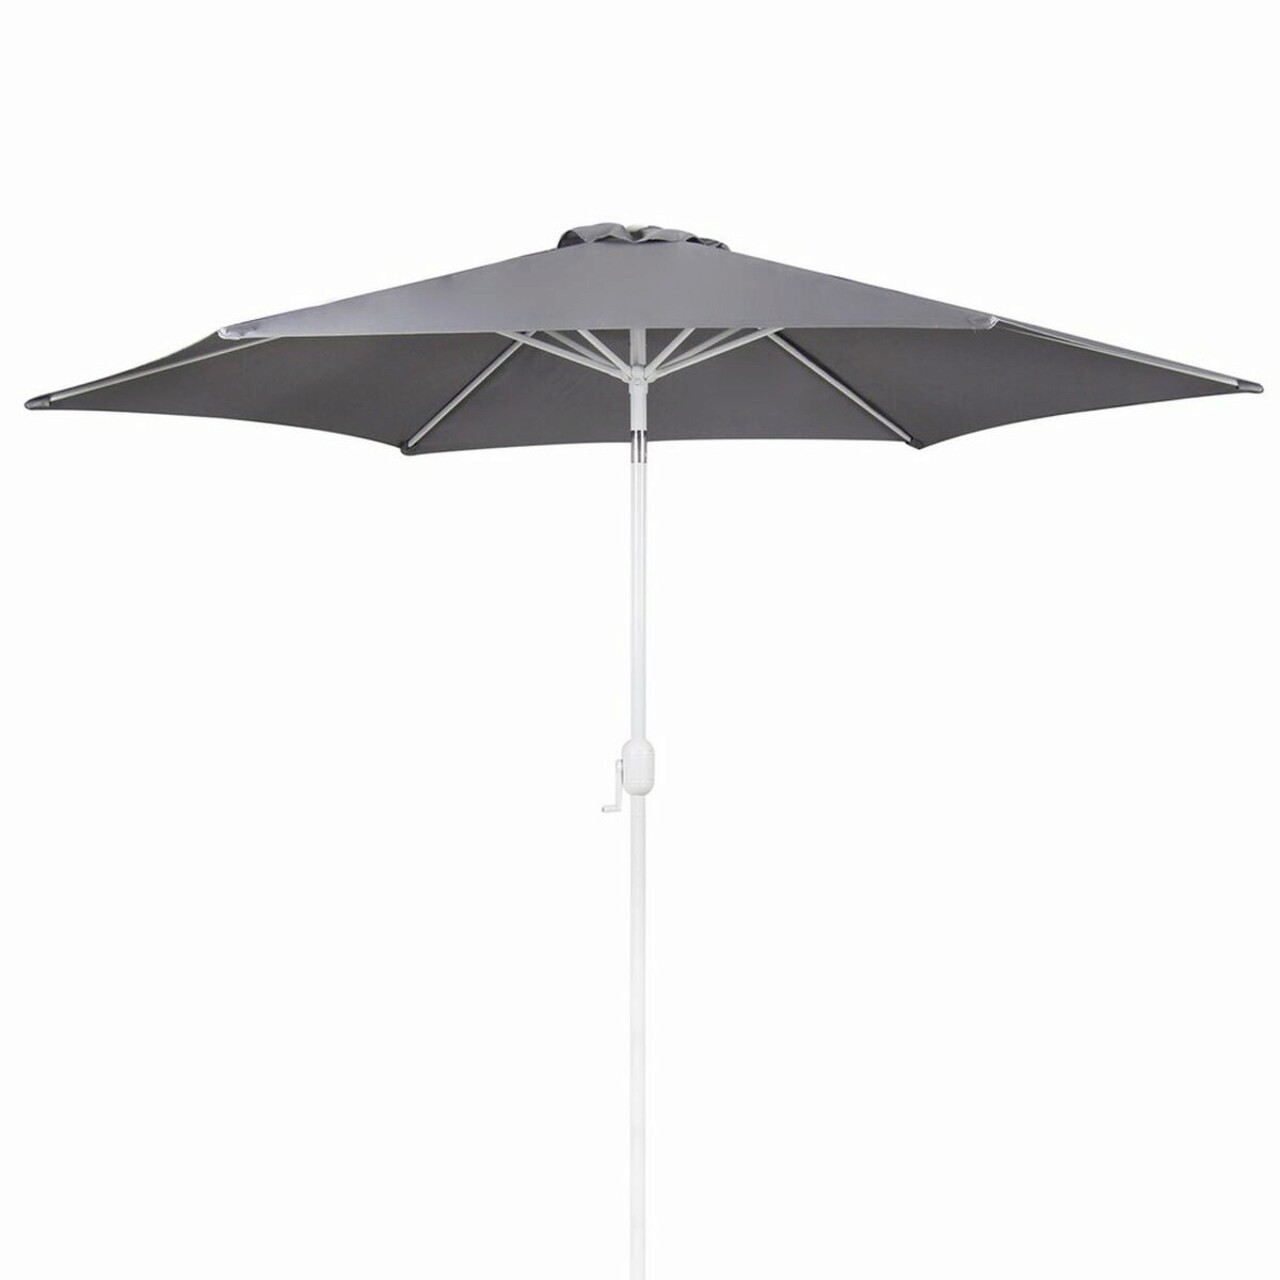 Thais Kerti/terasz napernyő, Ø350 cm, kurblival, oszloppal Ø48 mm, alumínium, szürke